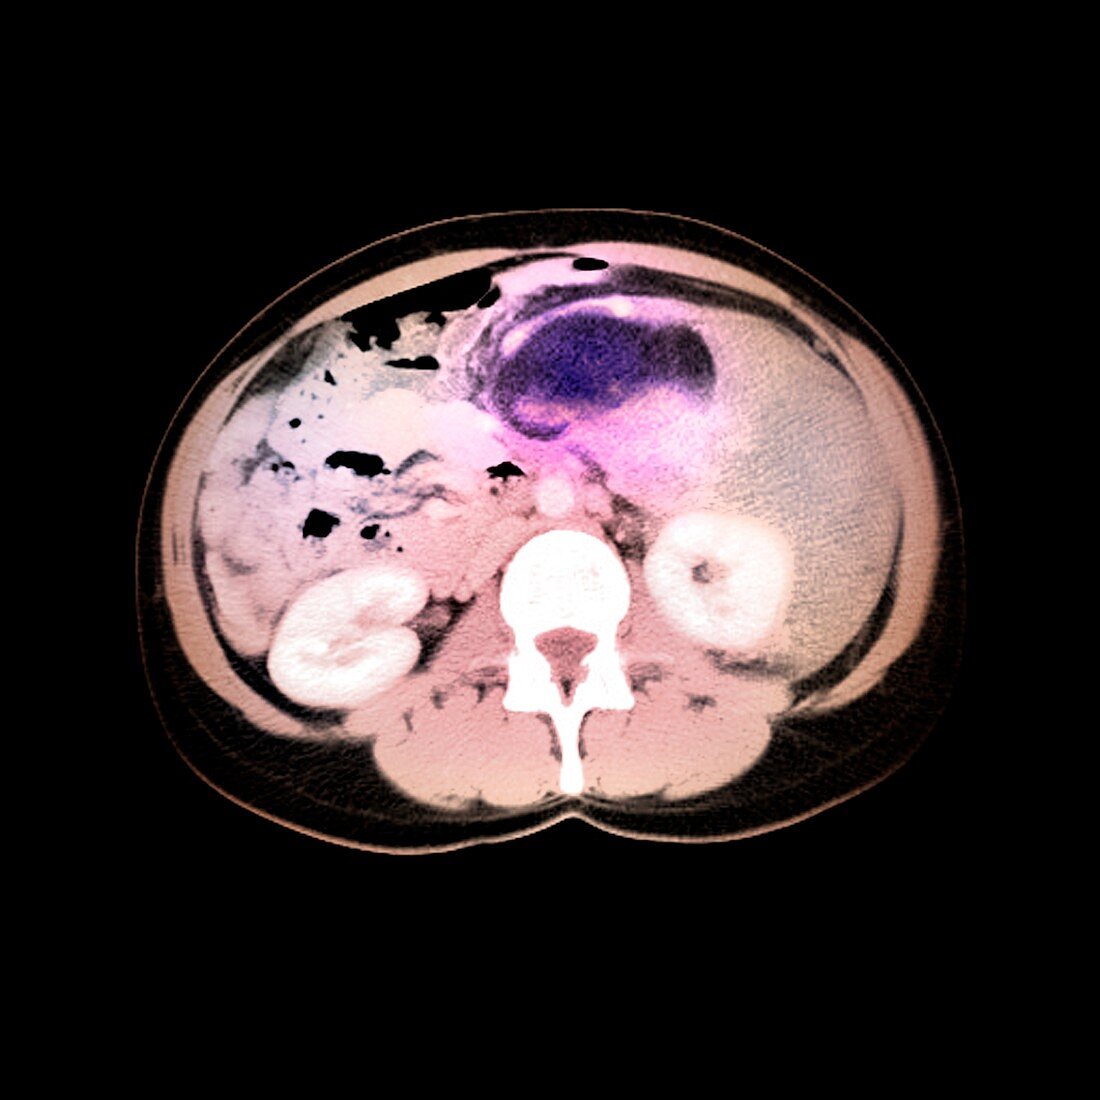 Liposarcoma,MRI scan